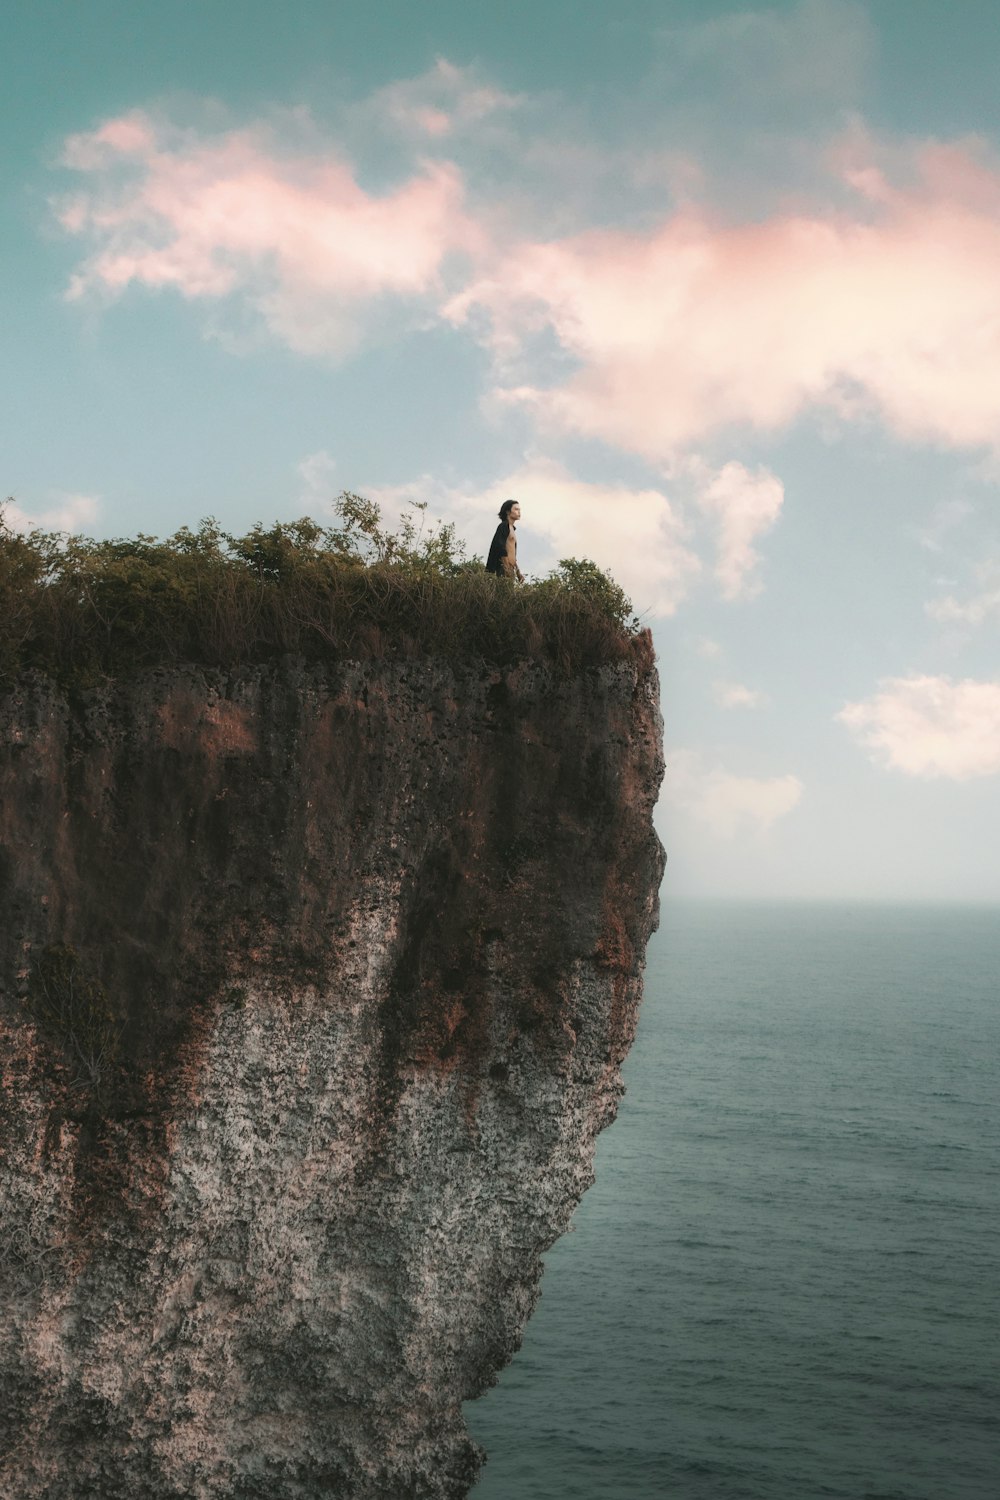 바다가 내려다 보이는 절벽 위에 서있는 남자